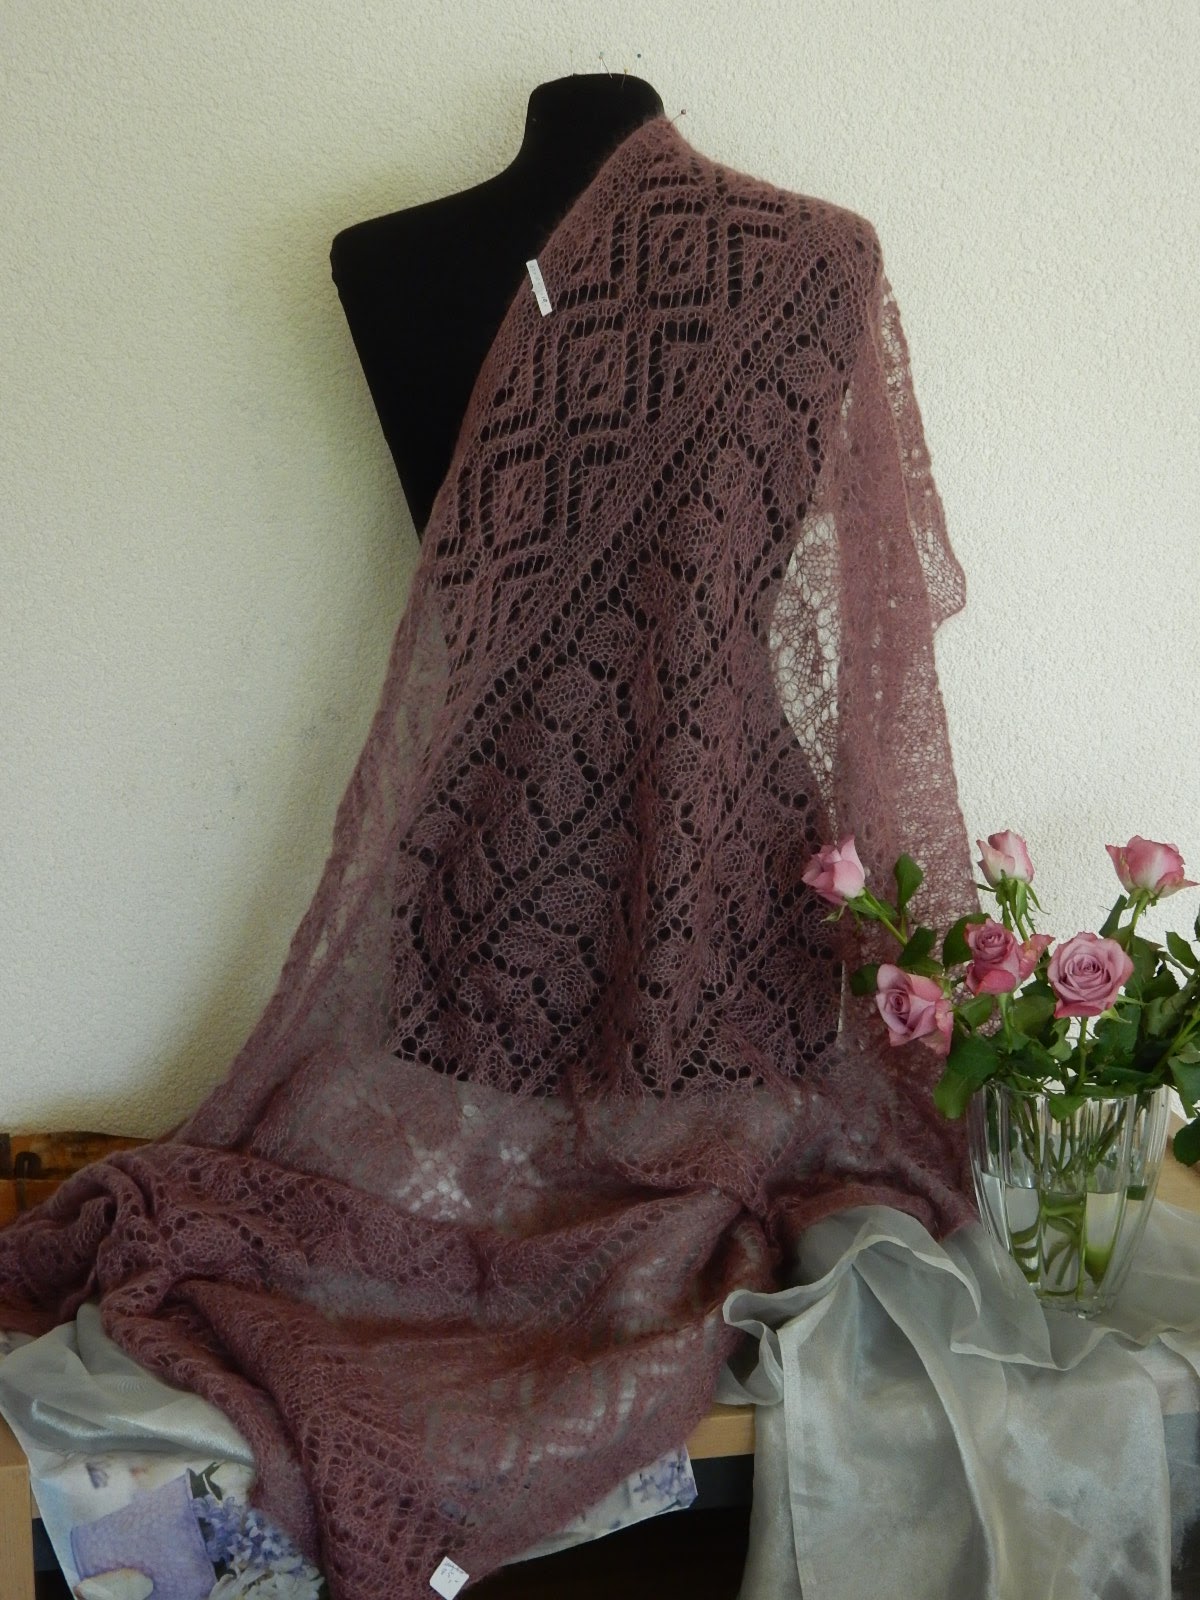 TE KOOP: oud roze shawl, hele grote stola. gebreid met Kidsilk.